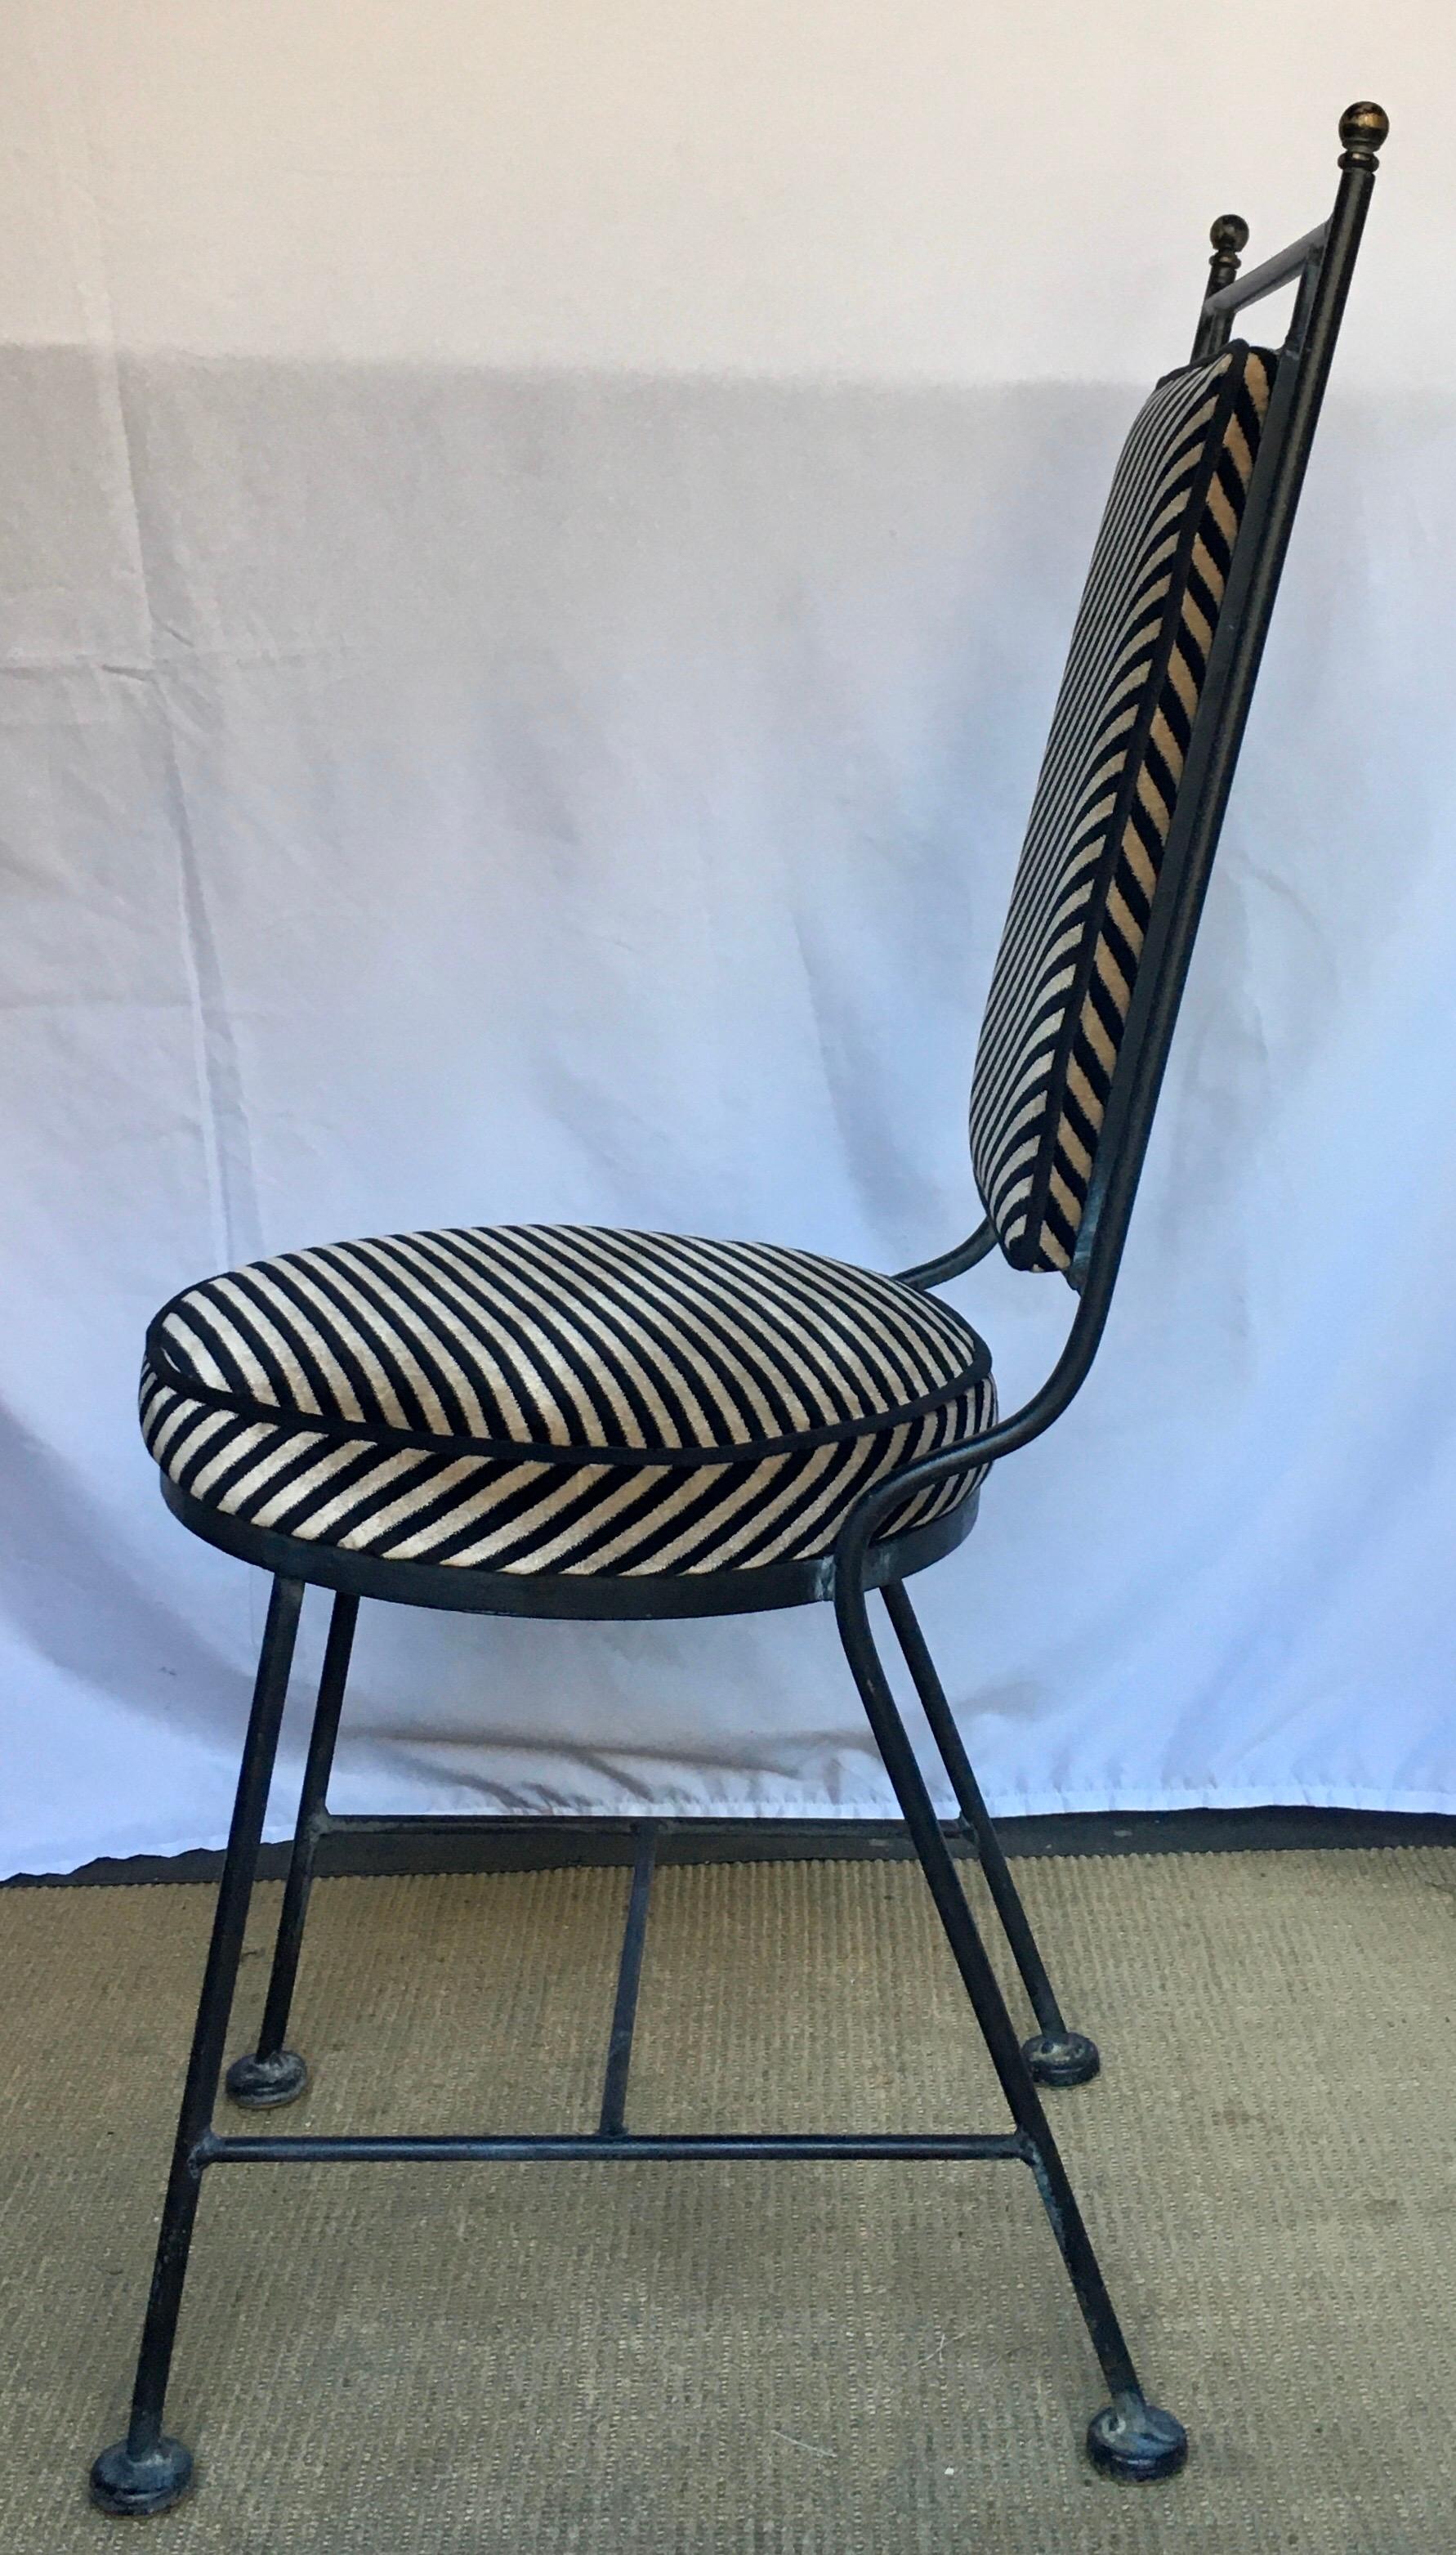 Mid-20th Century Sleek Mid-Century Modern Iron and Striped Salterini Style Chair, Italian